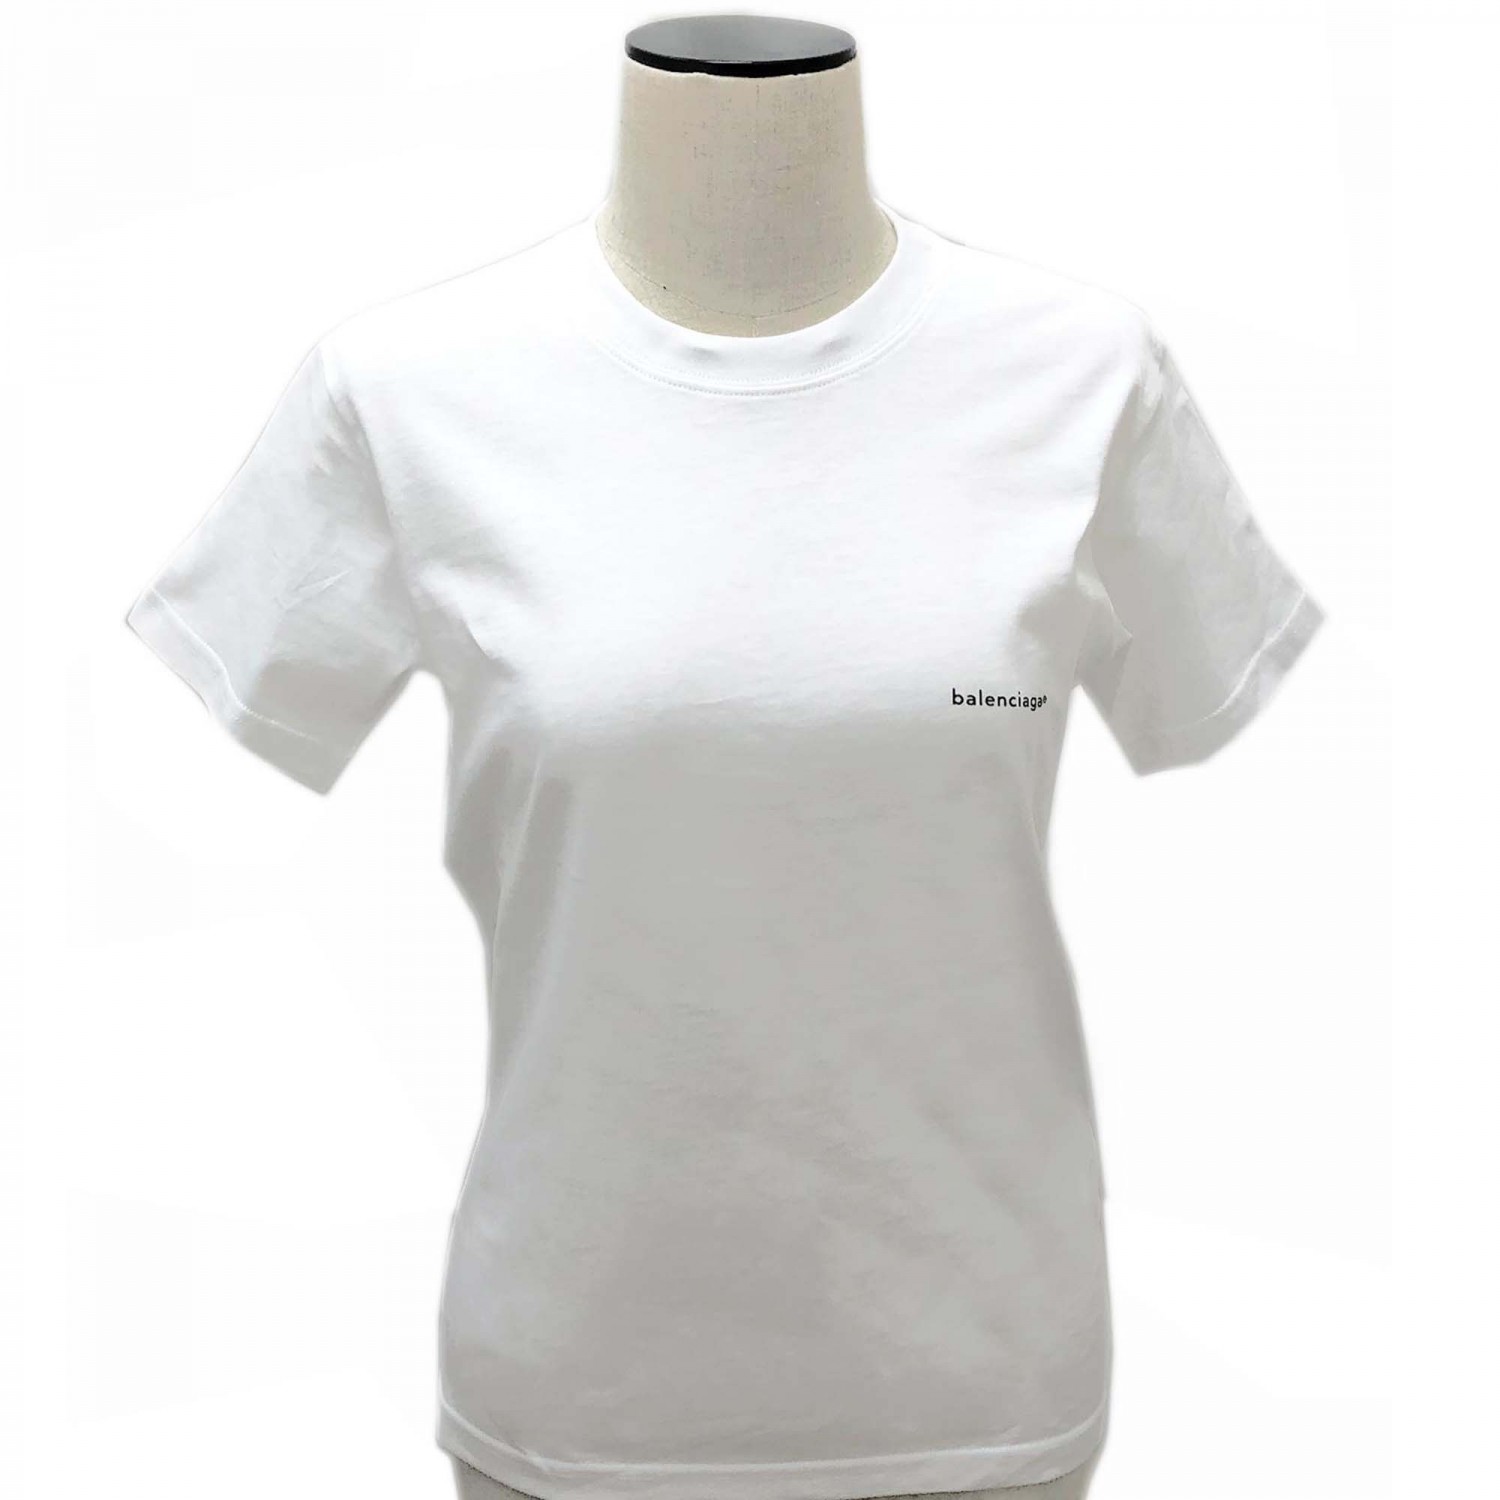 バレンシアガ Tシャツ BALENCIAGA 556107 TYK28 9000 レディース クルーネック 丸首 Tシャツ コットン ホワイト